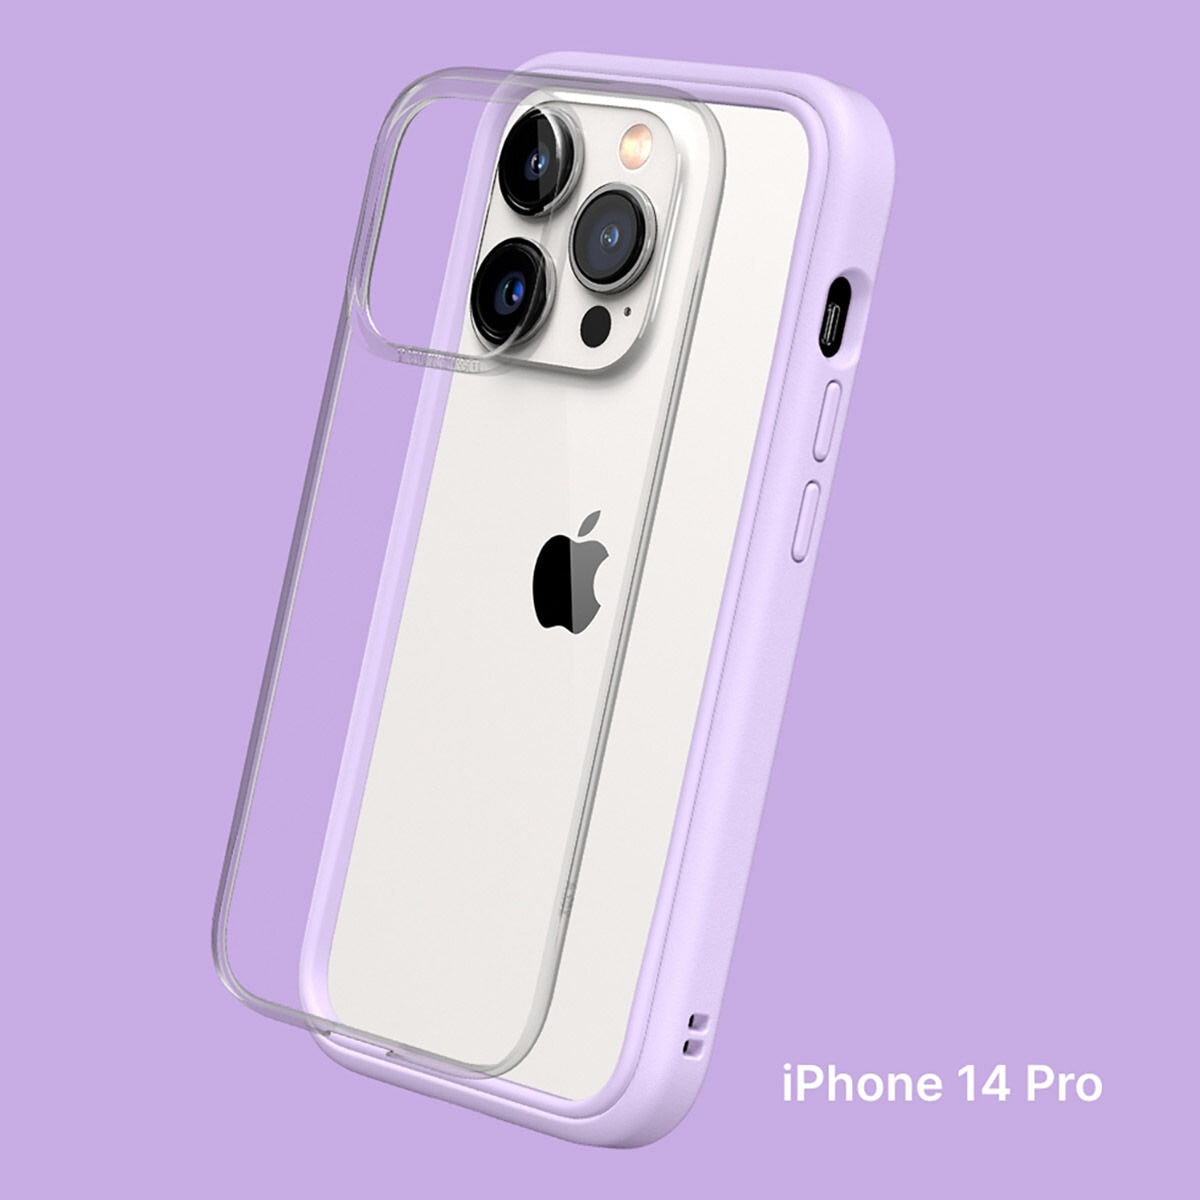 犀牛盾 iPhone 14 Pro MOD NX 防摔手機殼 + 9H 3D滿版螢幕玻璃保護貼 紫羅蘭